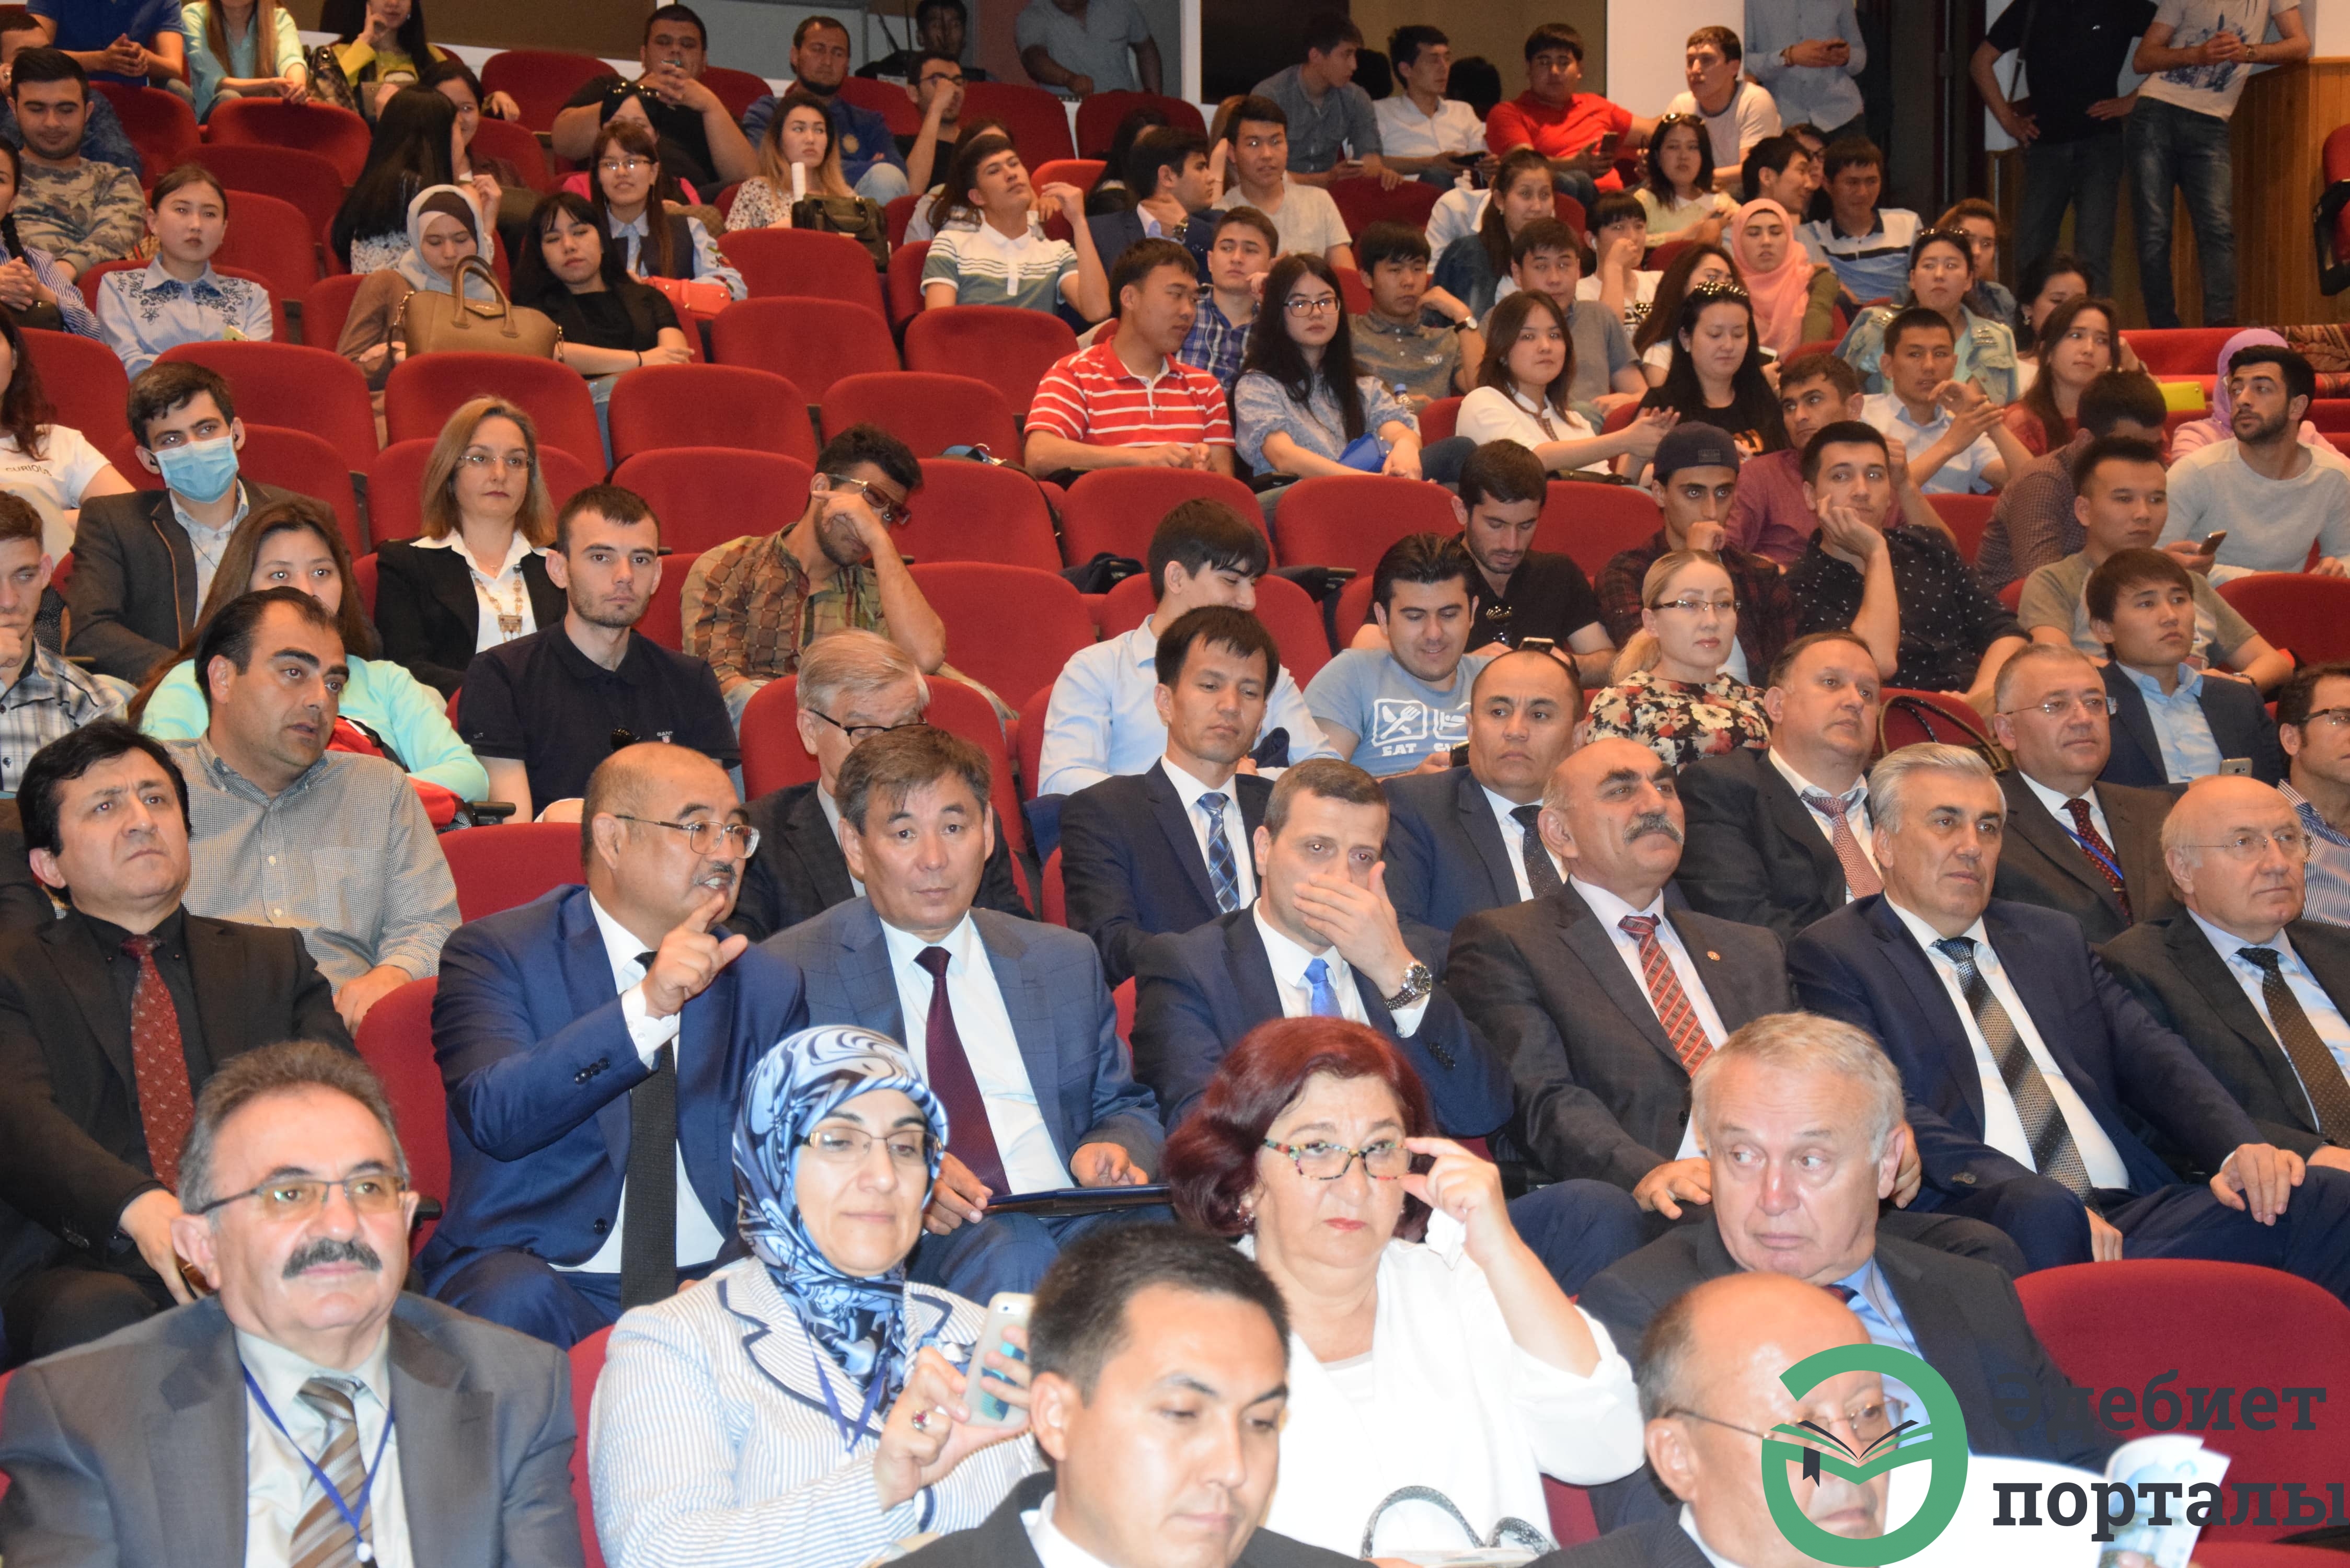 Халықаралық әлеуметтік ғылымдар конгресі: ІІІ Түркістан форумы  - фото 97 - adebiportal.kz